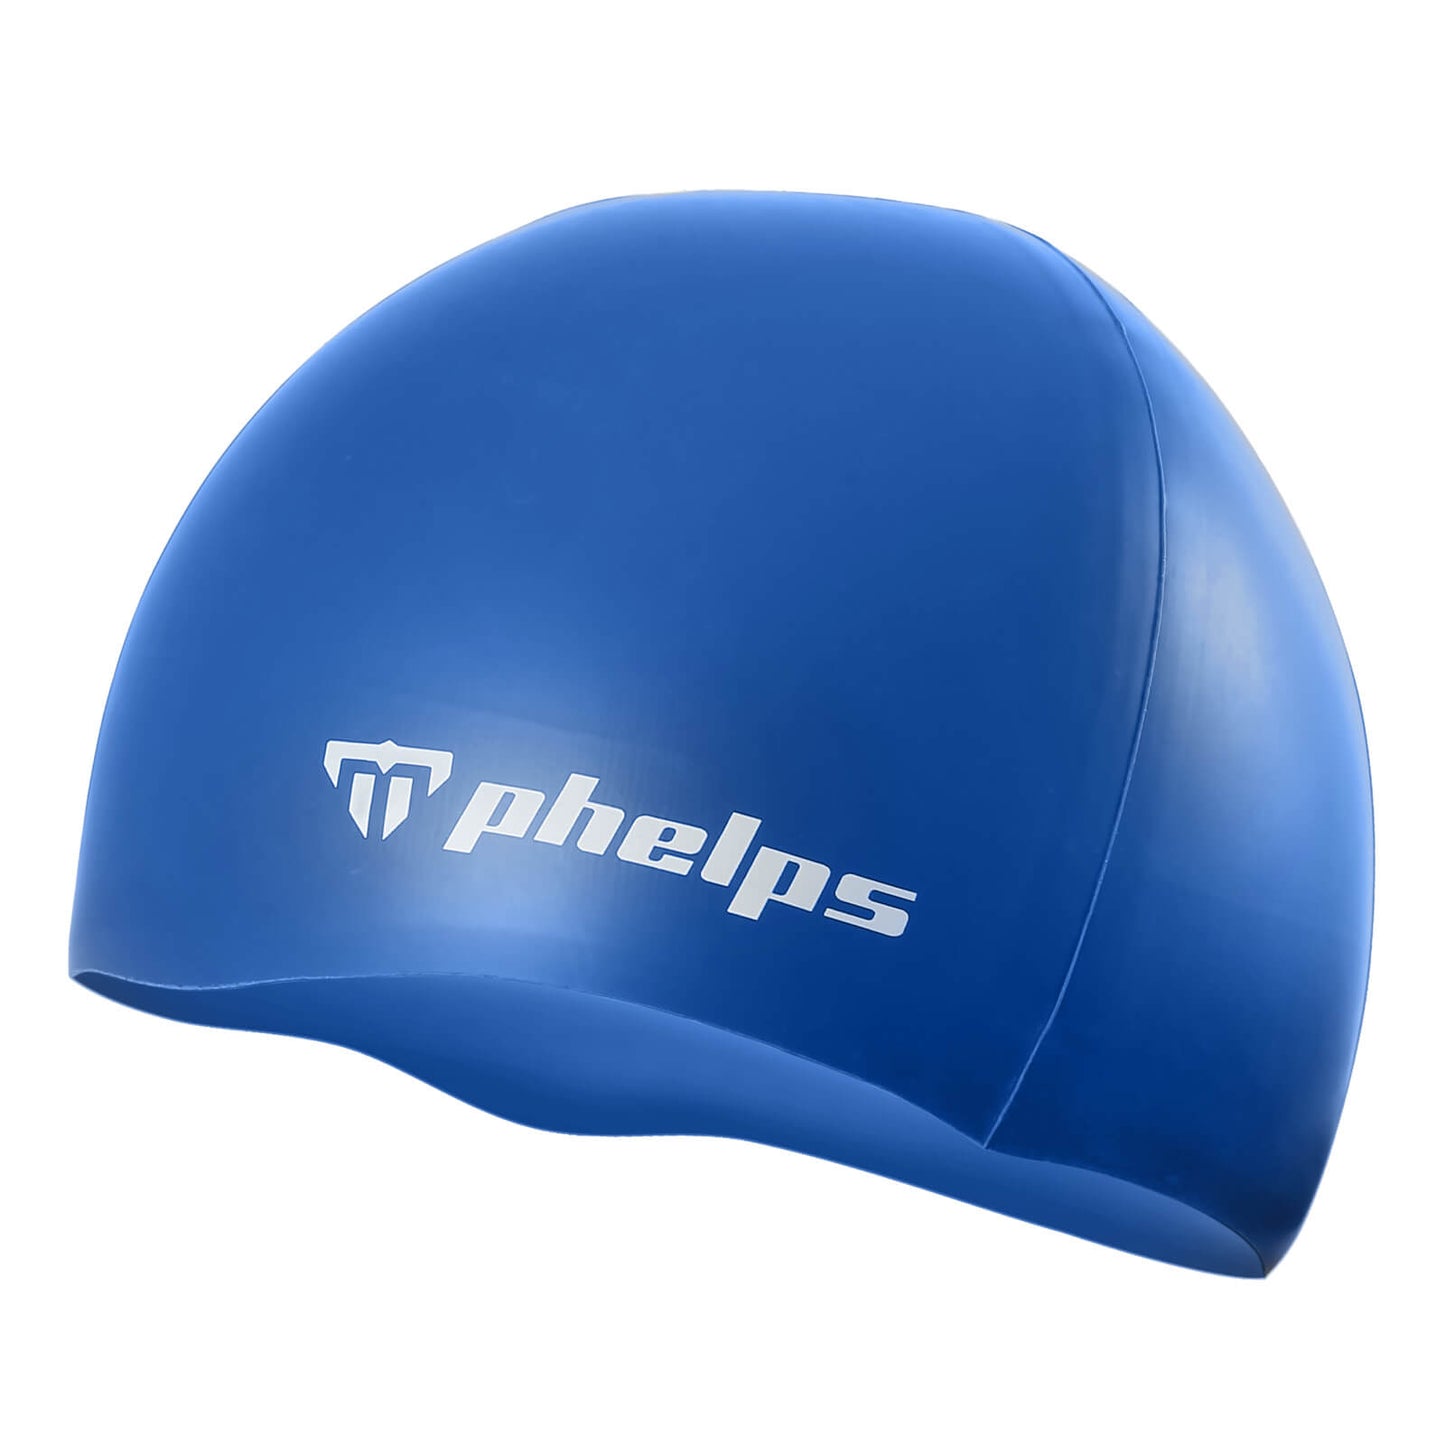 Phelps Classic Silicone Men's Swimming Cap Blue